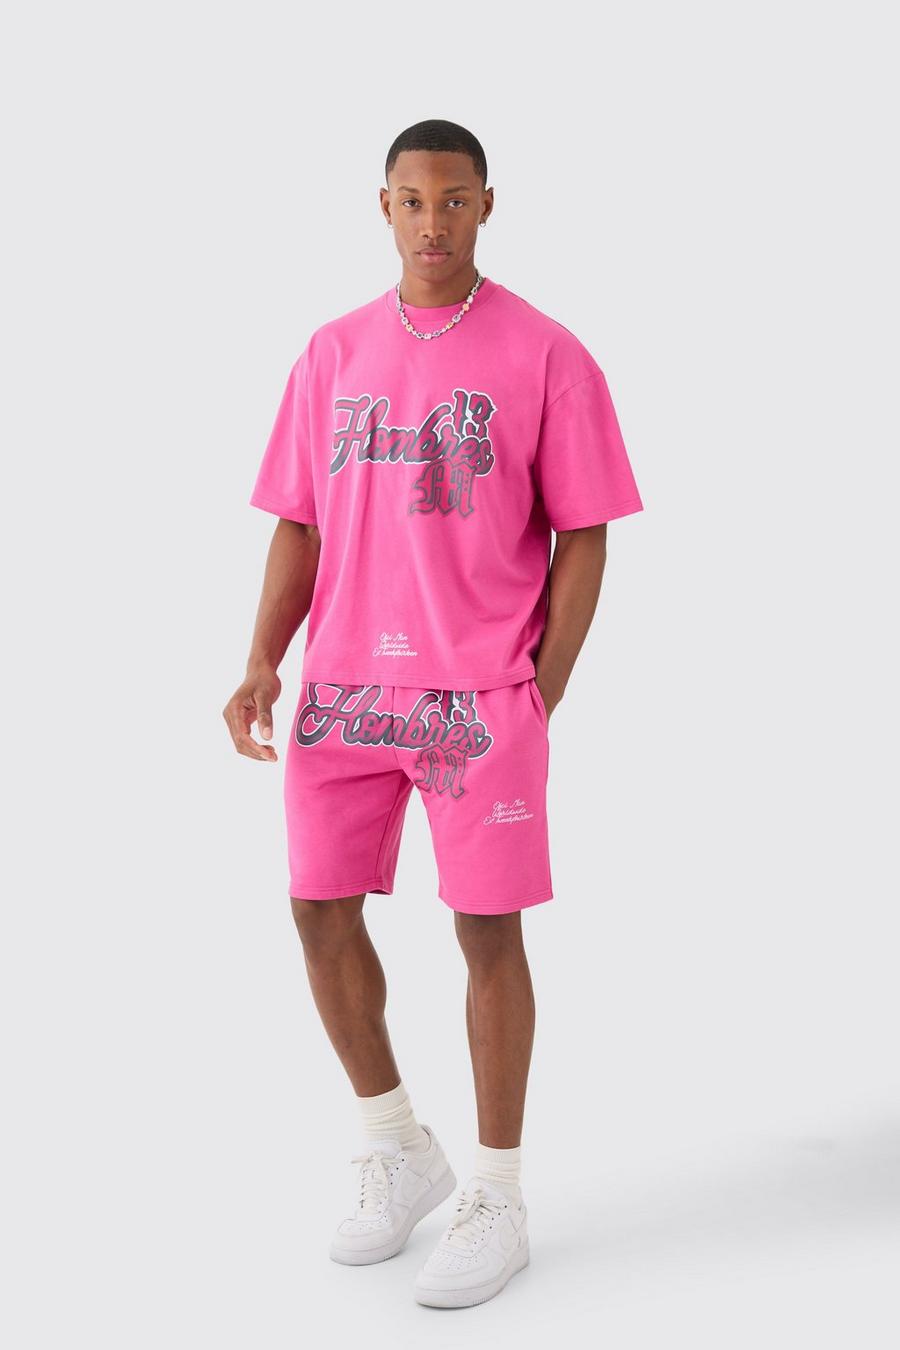 Kastiges Oversize T-Shirt mit Homme-Print und Shorts, Rose